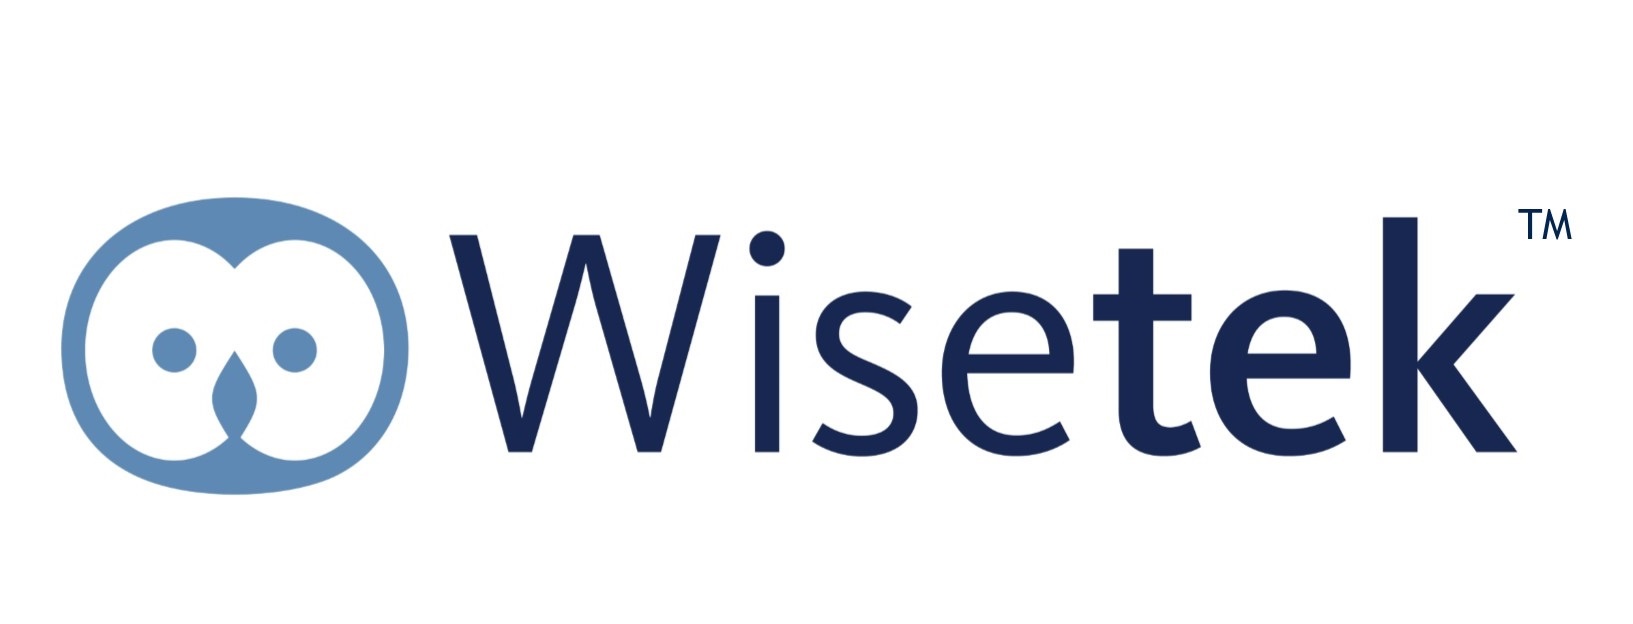 Wisetek Logo